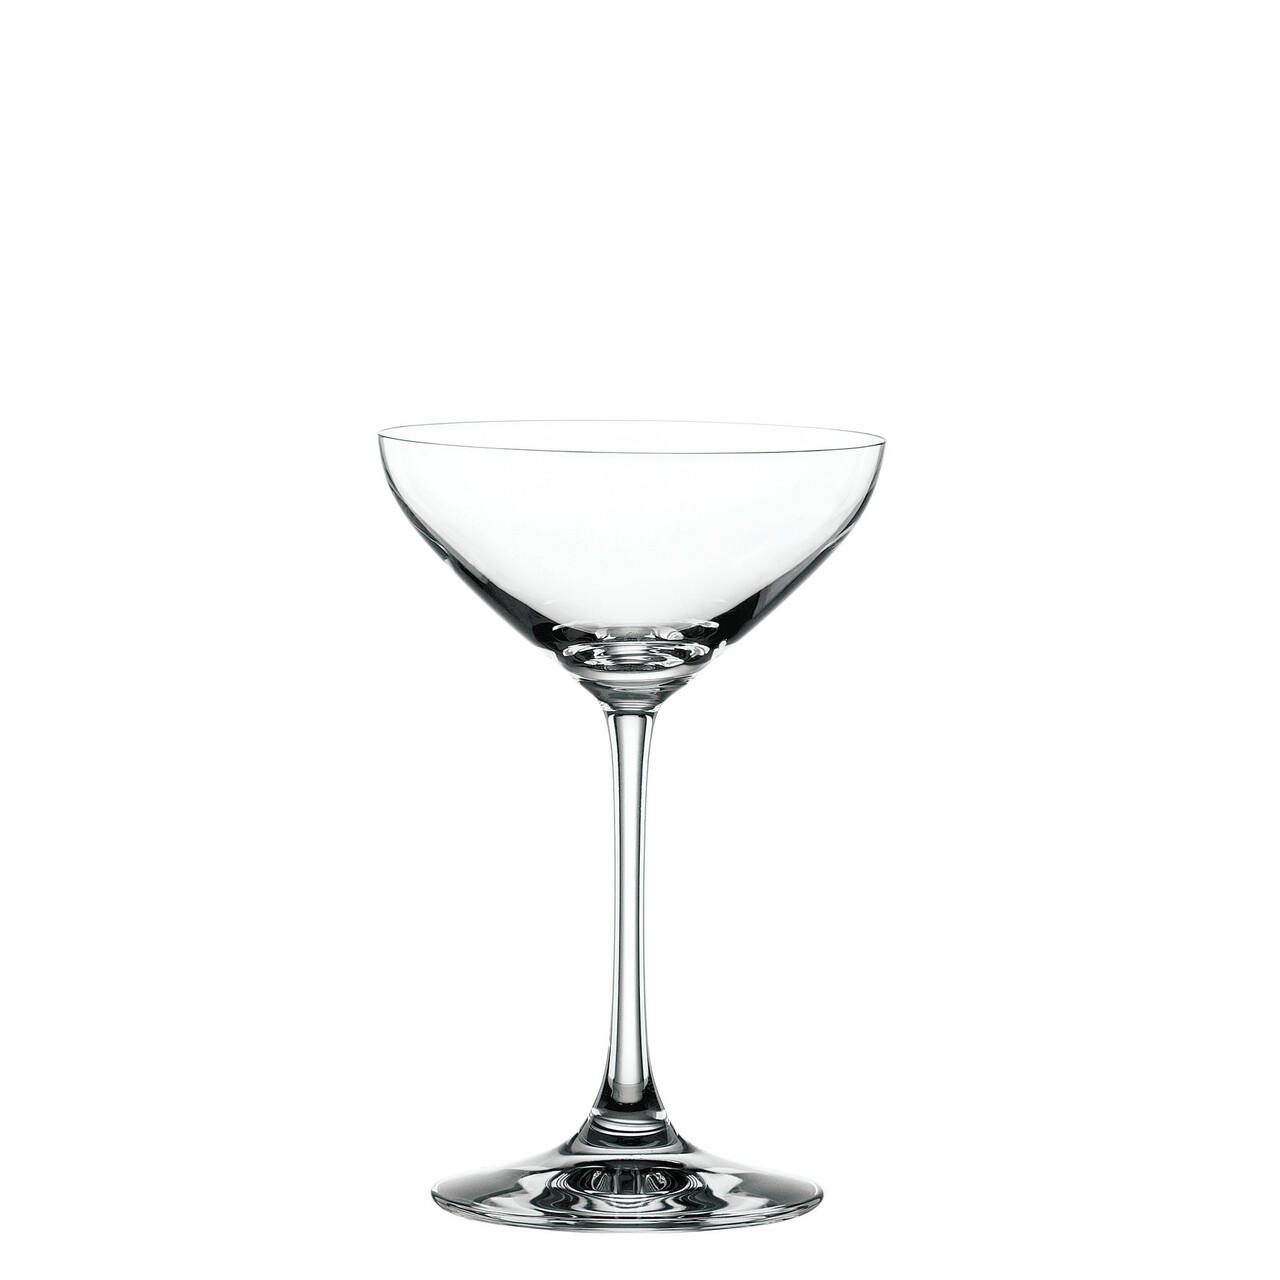 Spiegelau Willsberger Martini Glasses, Set Of 4, Lead-free Crystal